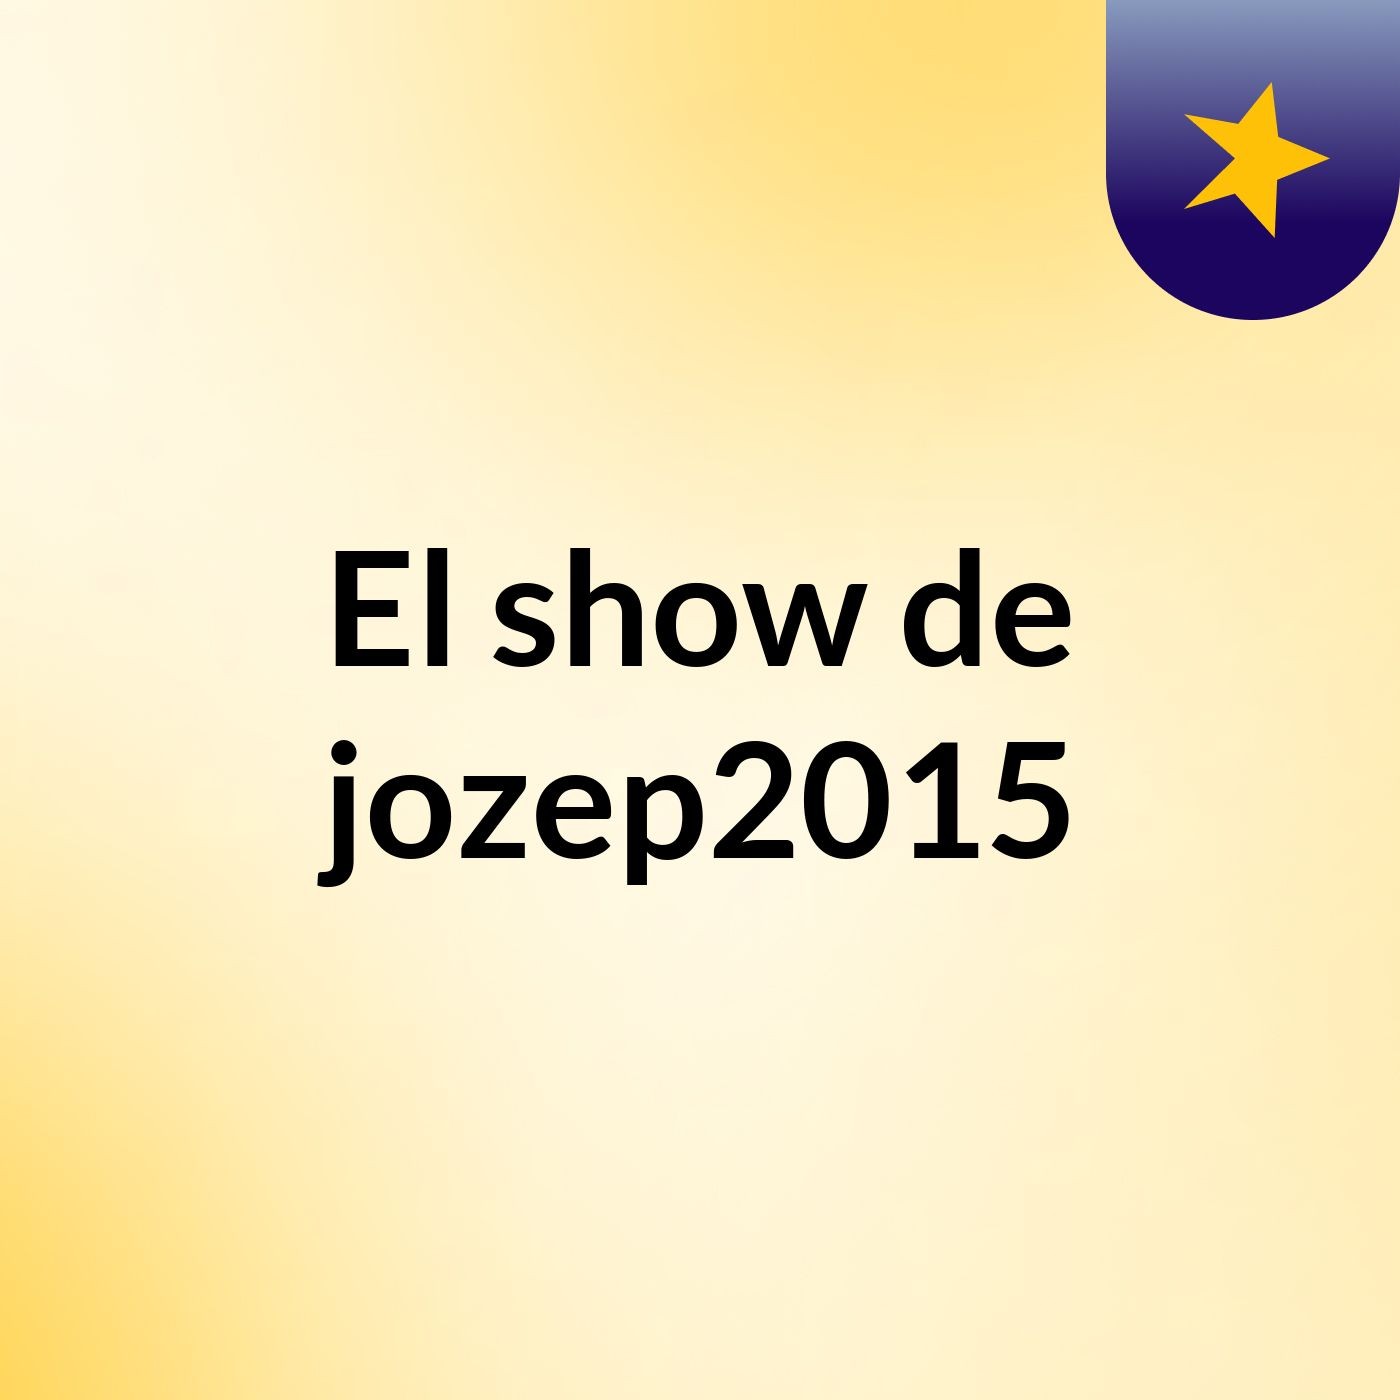 El show de jozep2015